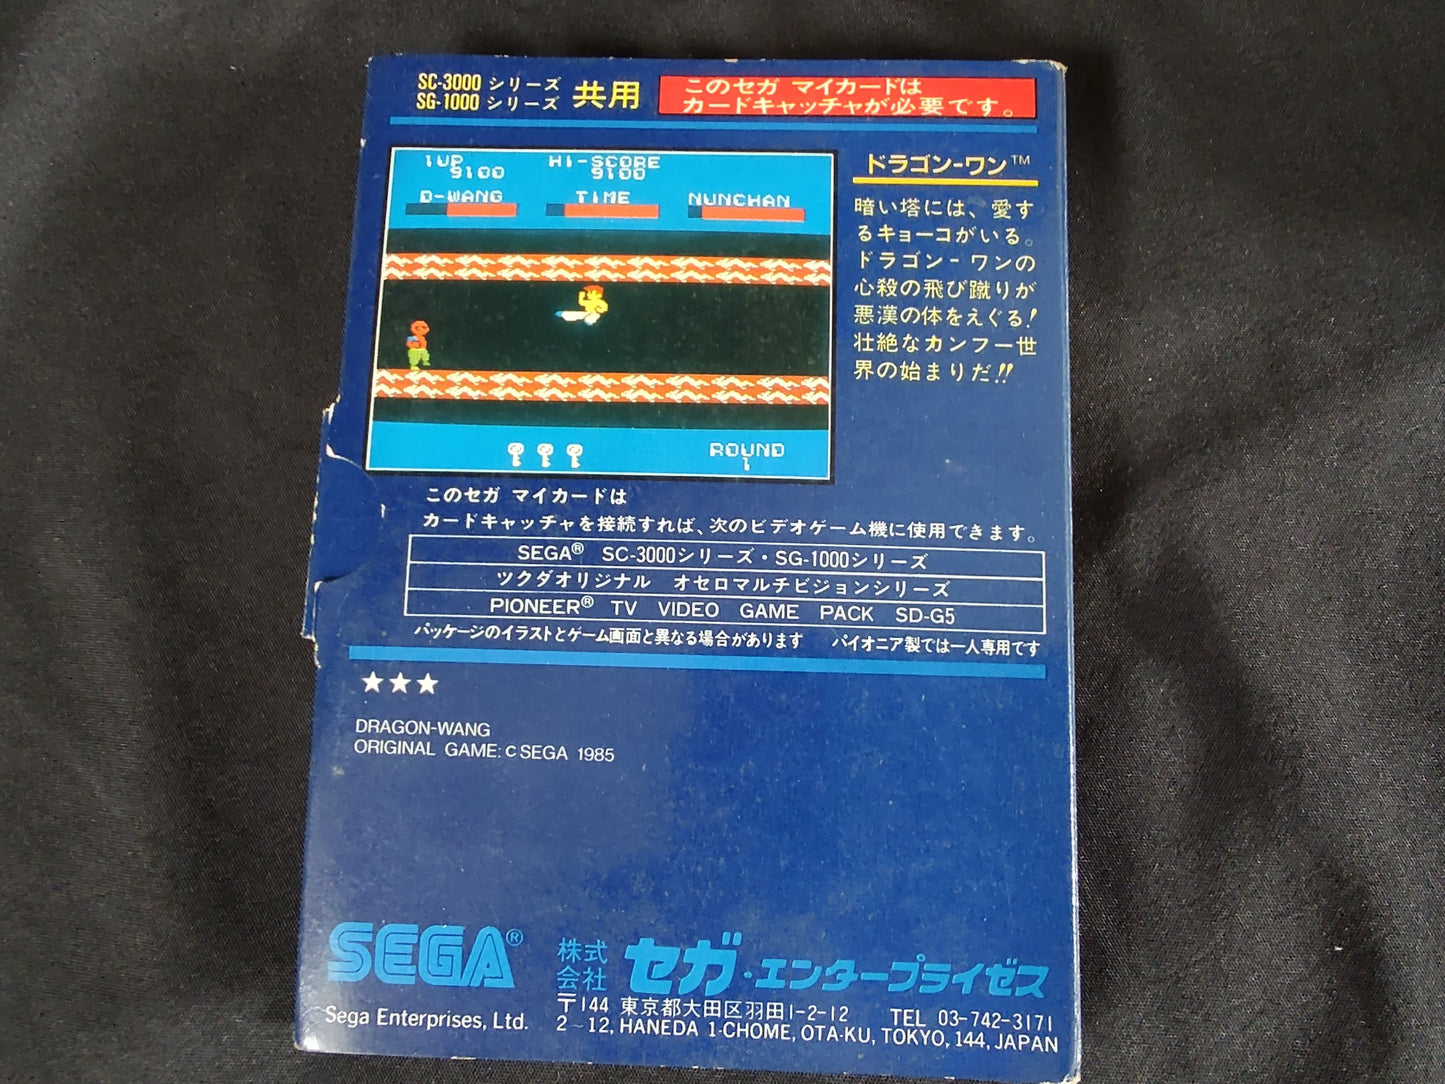 Dragon Wang My card SEGA Master system /Mark3 w/Manual and Box, Working-f1221-